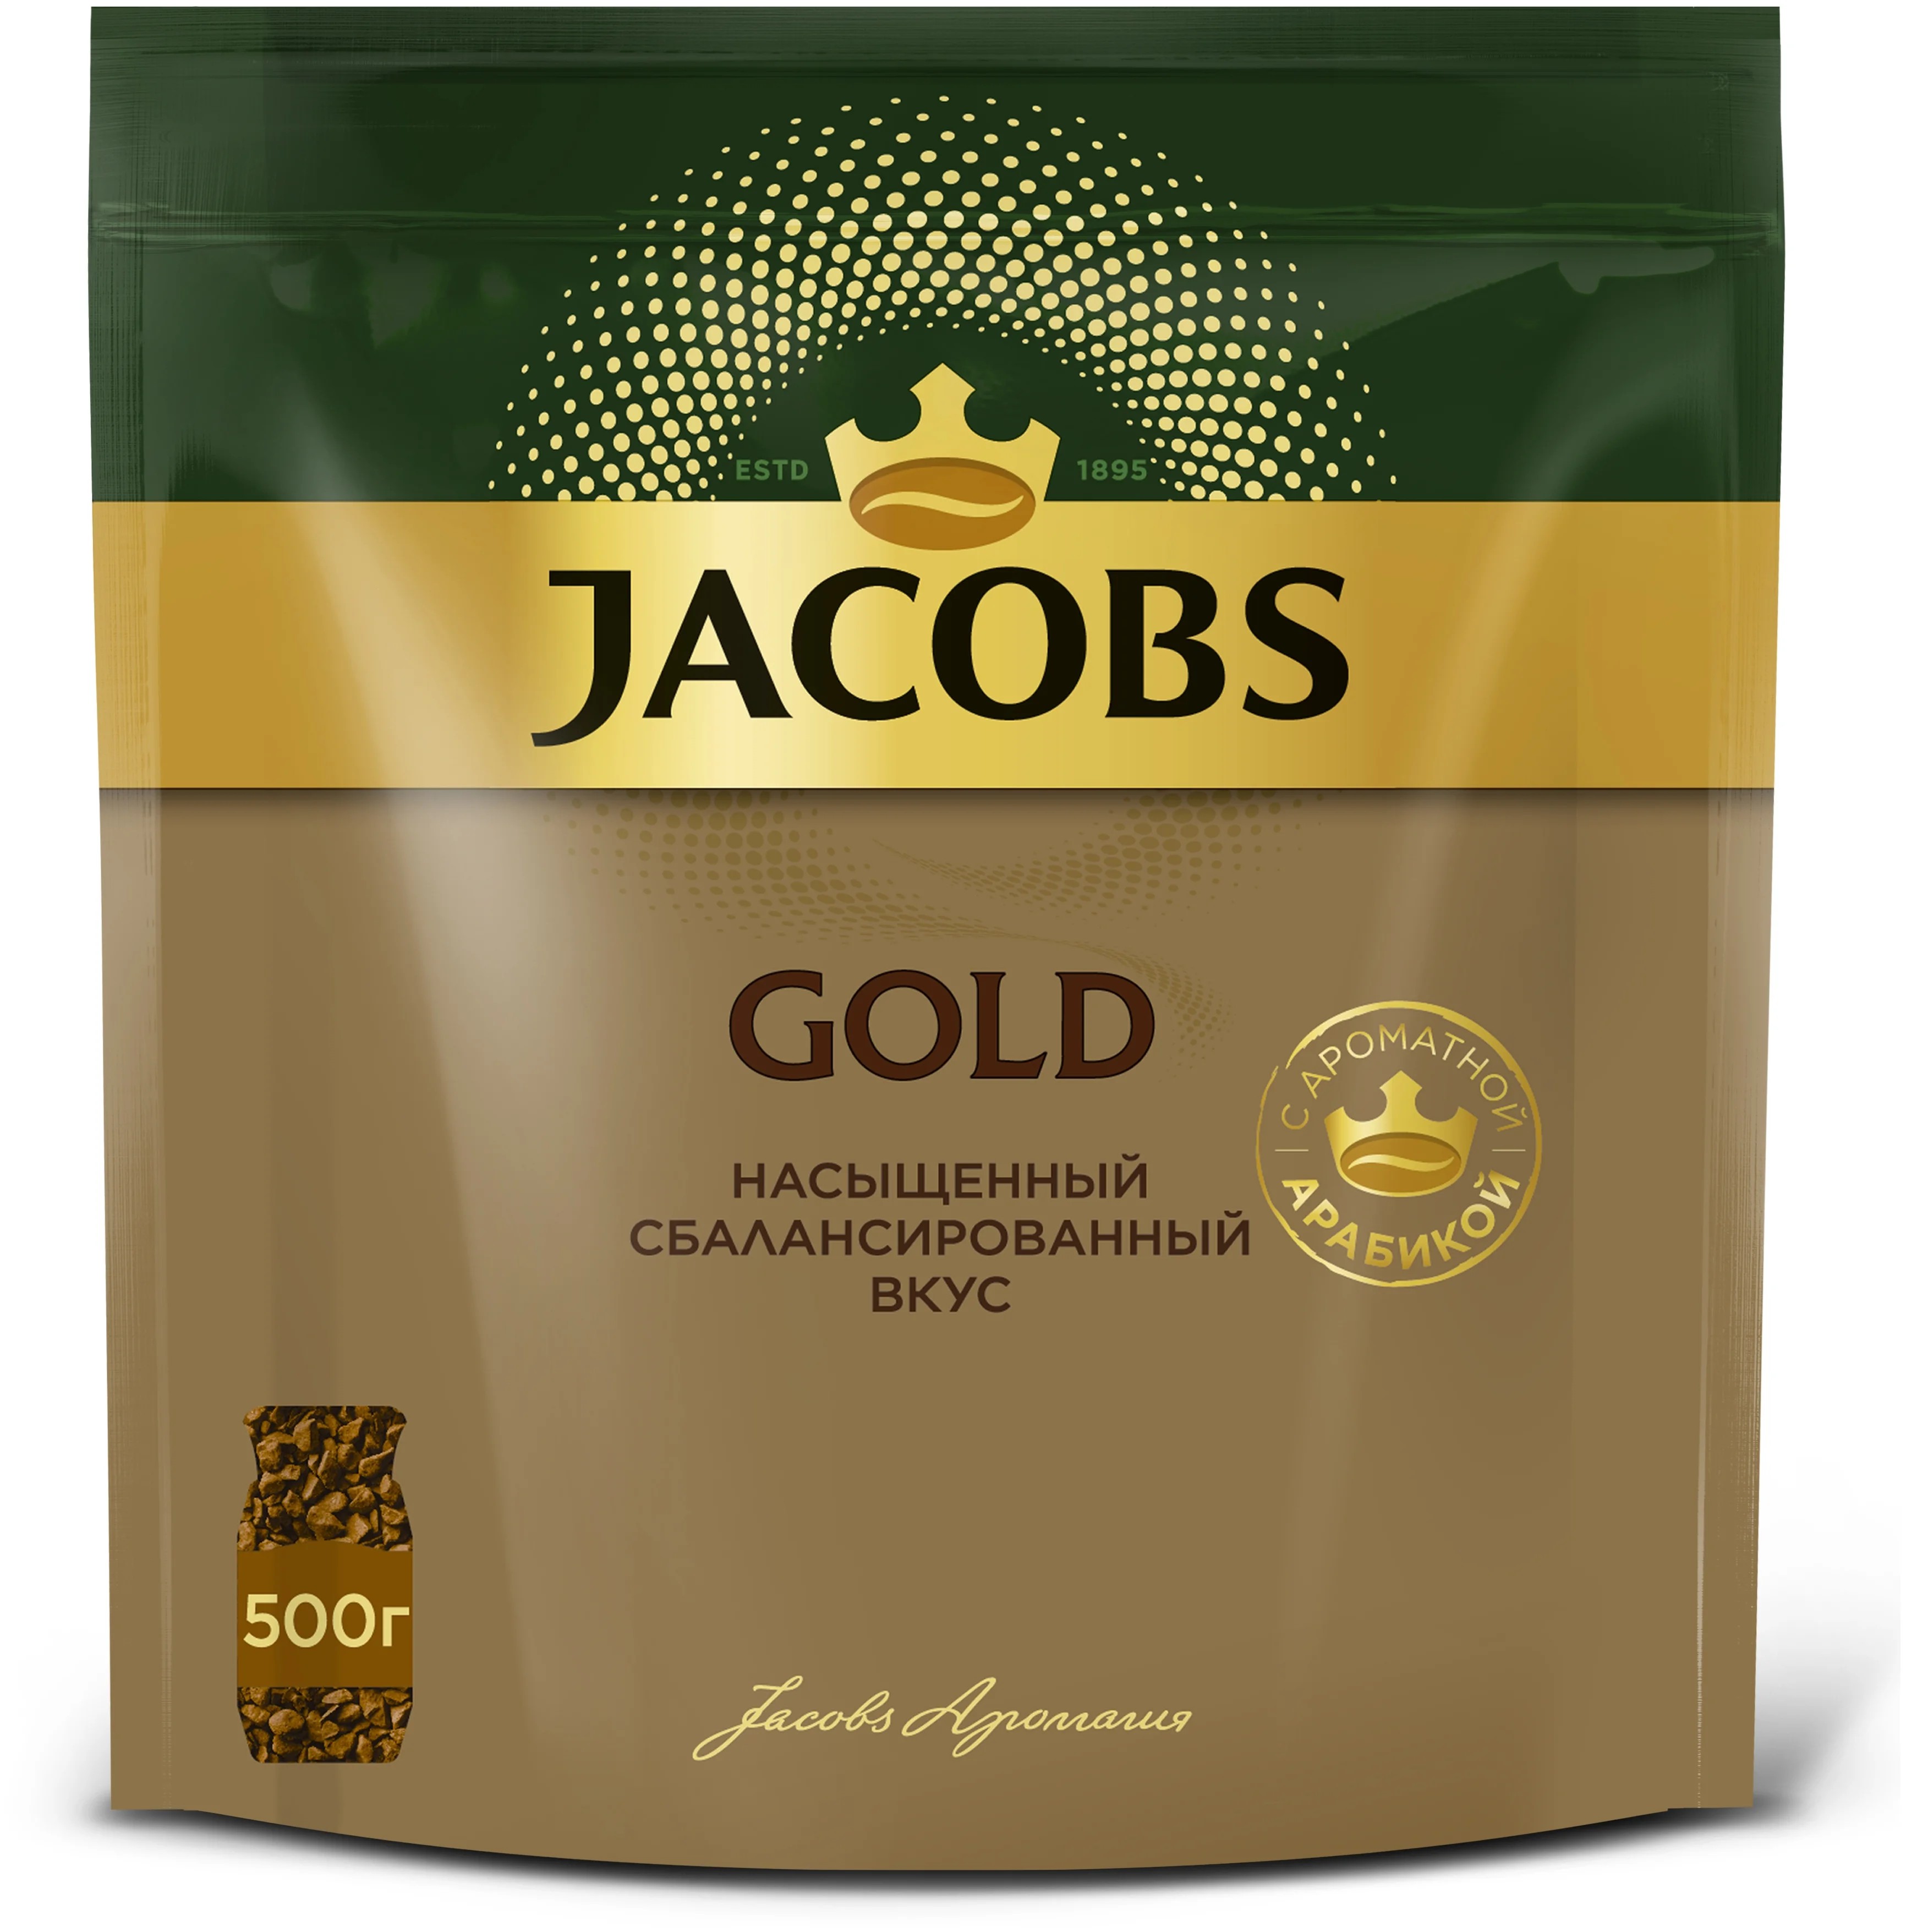 Кофе растворимый JACOBS GOLD сублимированный, м/у, 500г.